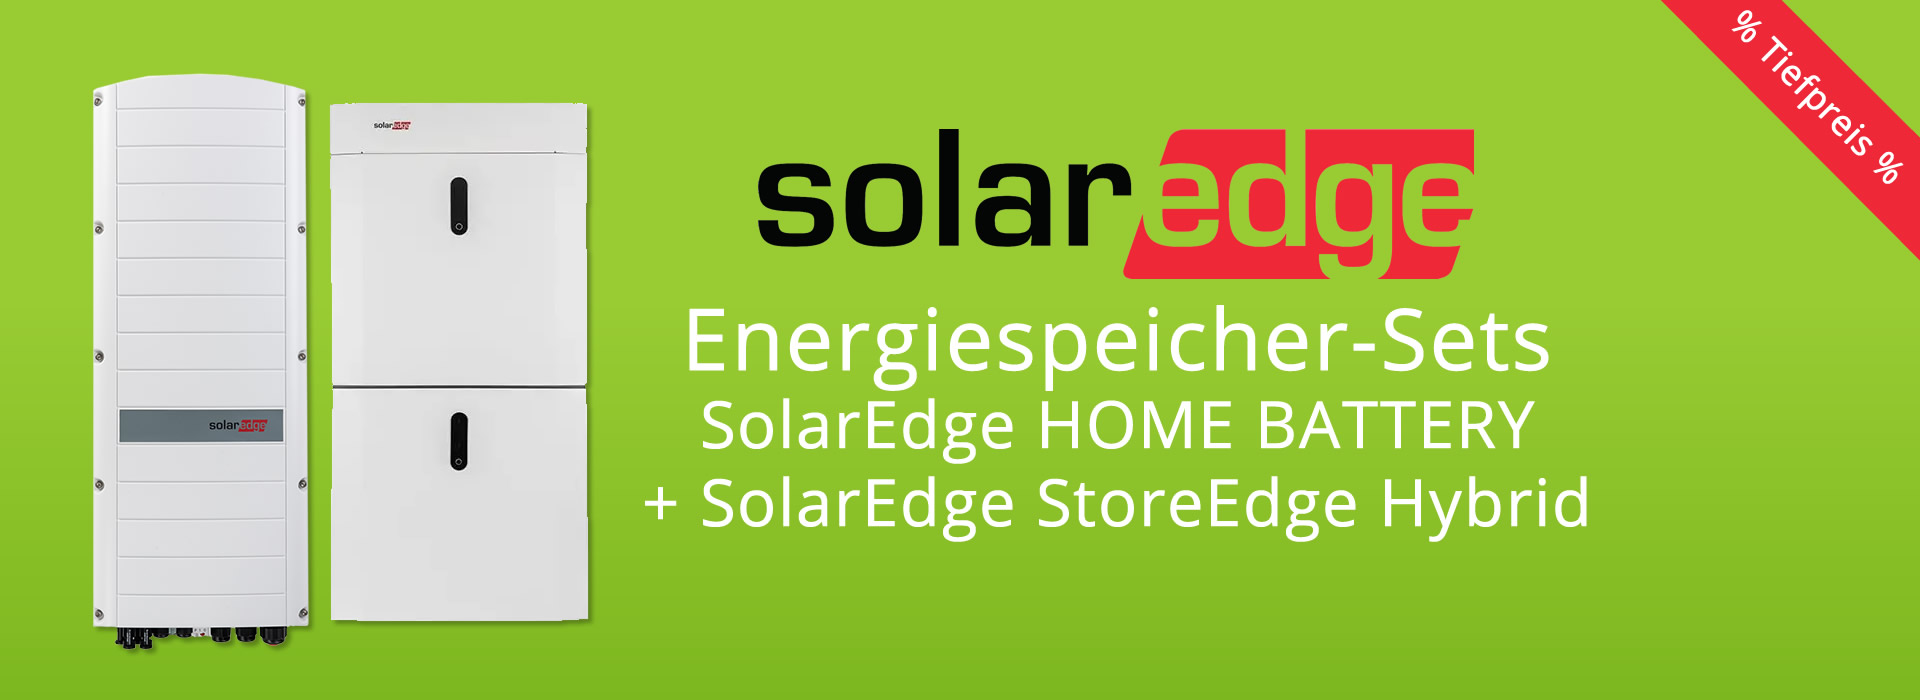 SolarEdge Home Battery + StoreEdge Hybrid - jetzt zum günstigen Preis kaufen!